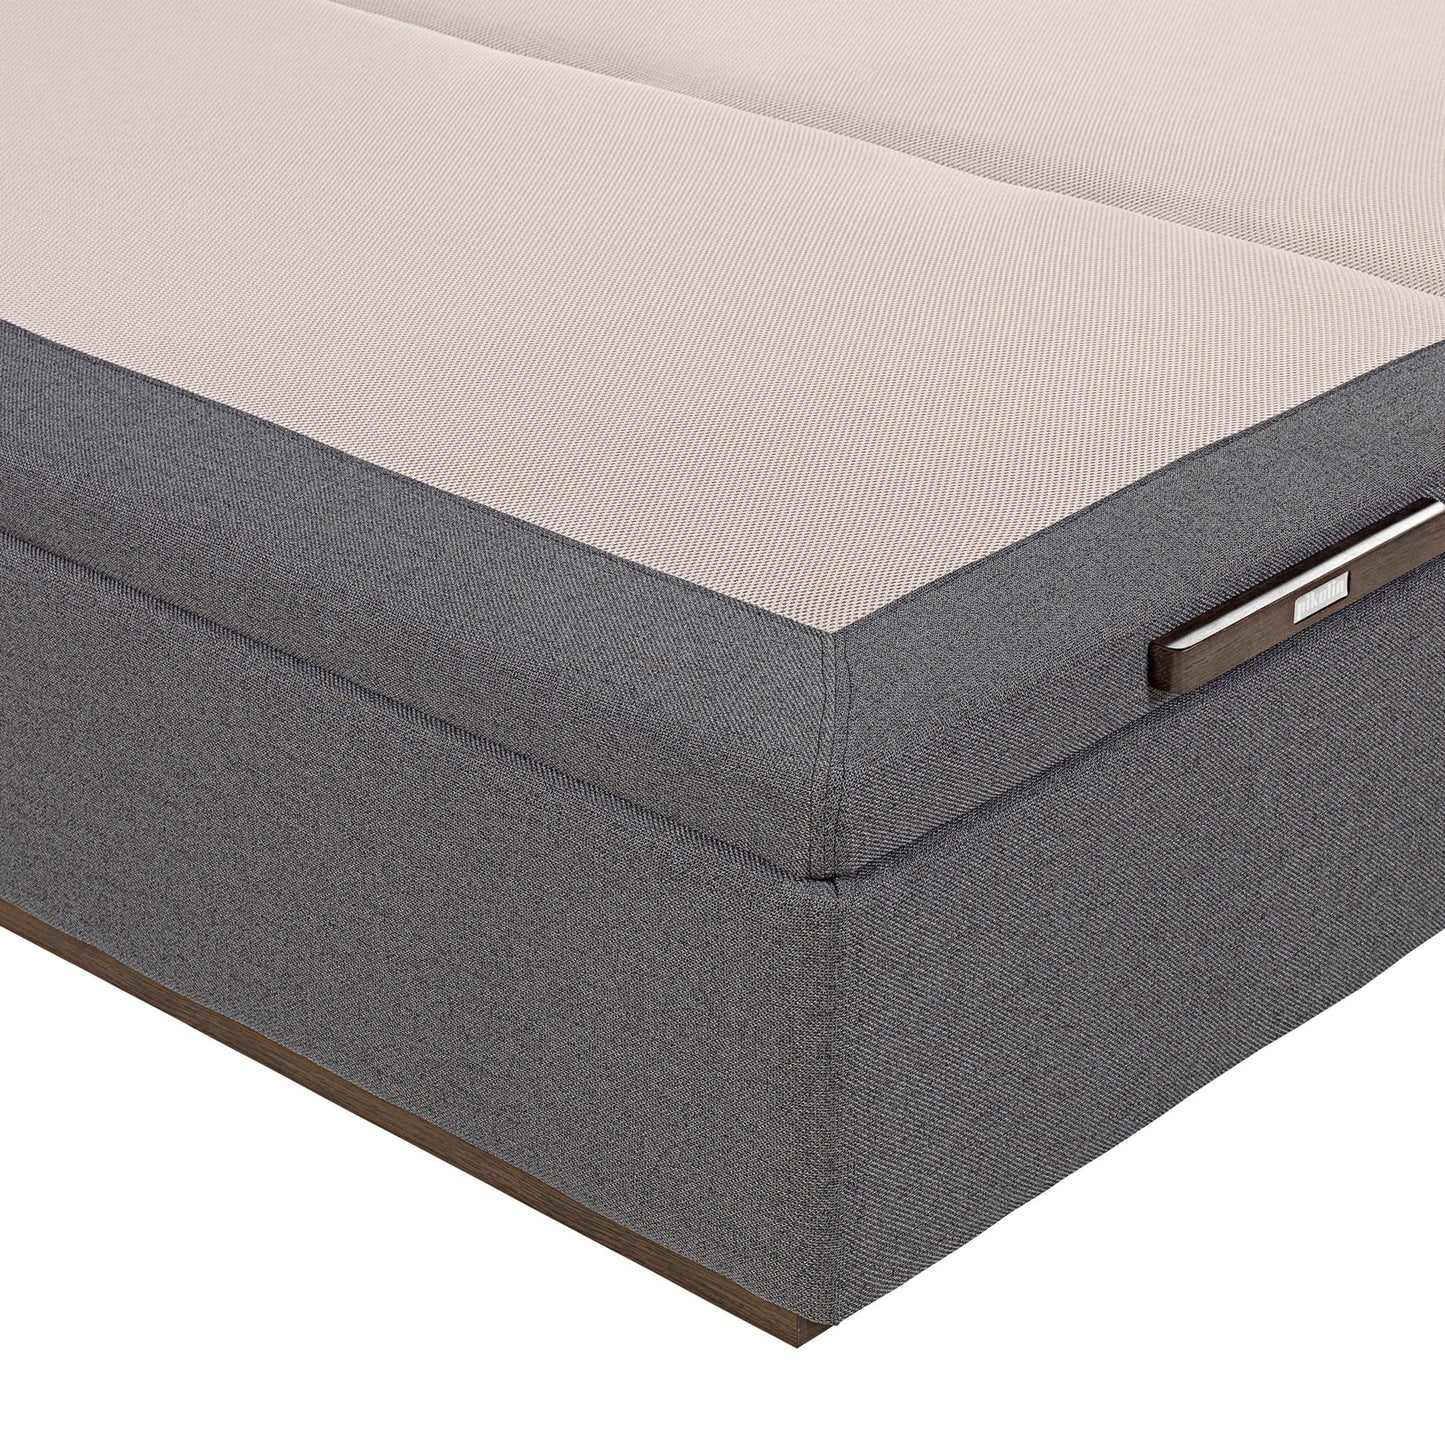 Canapé abatible de tapa doble de color piombo - TEXTIL - 160x200